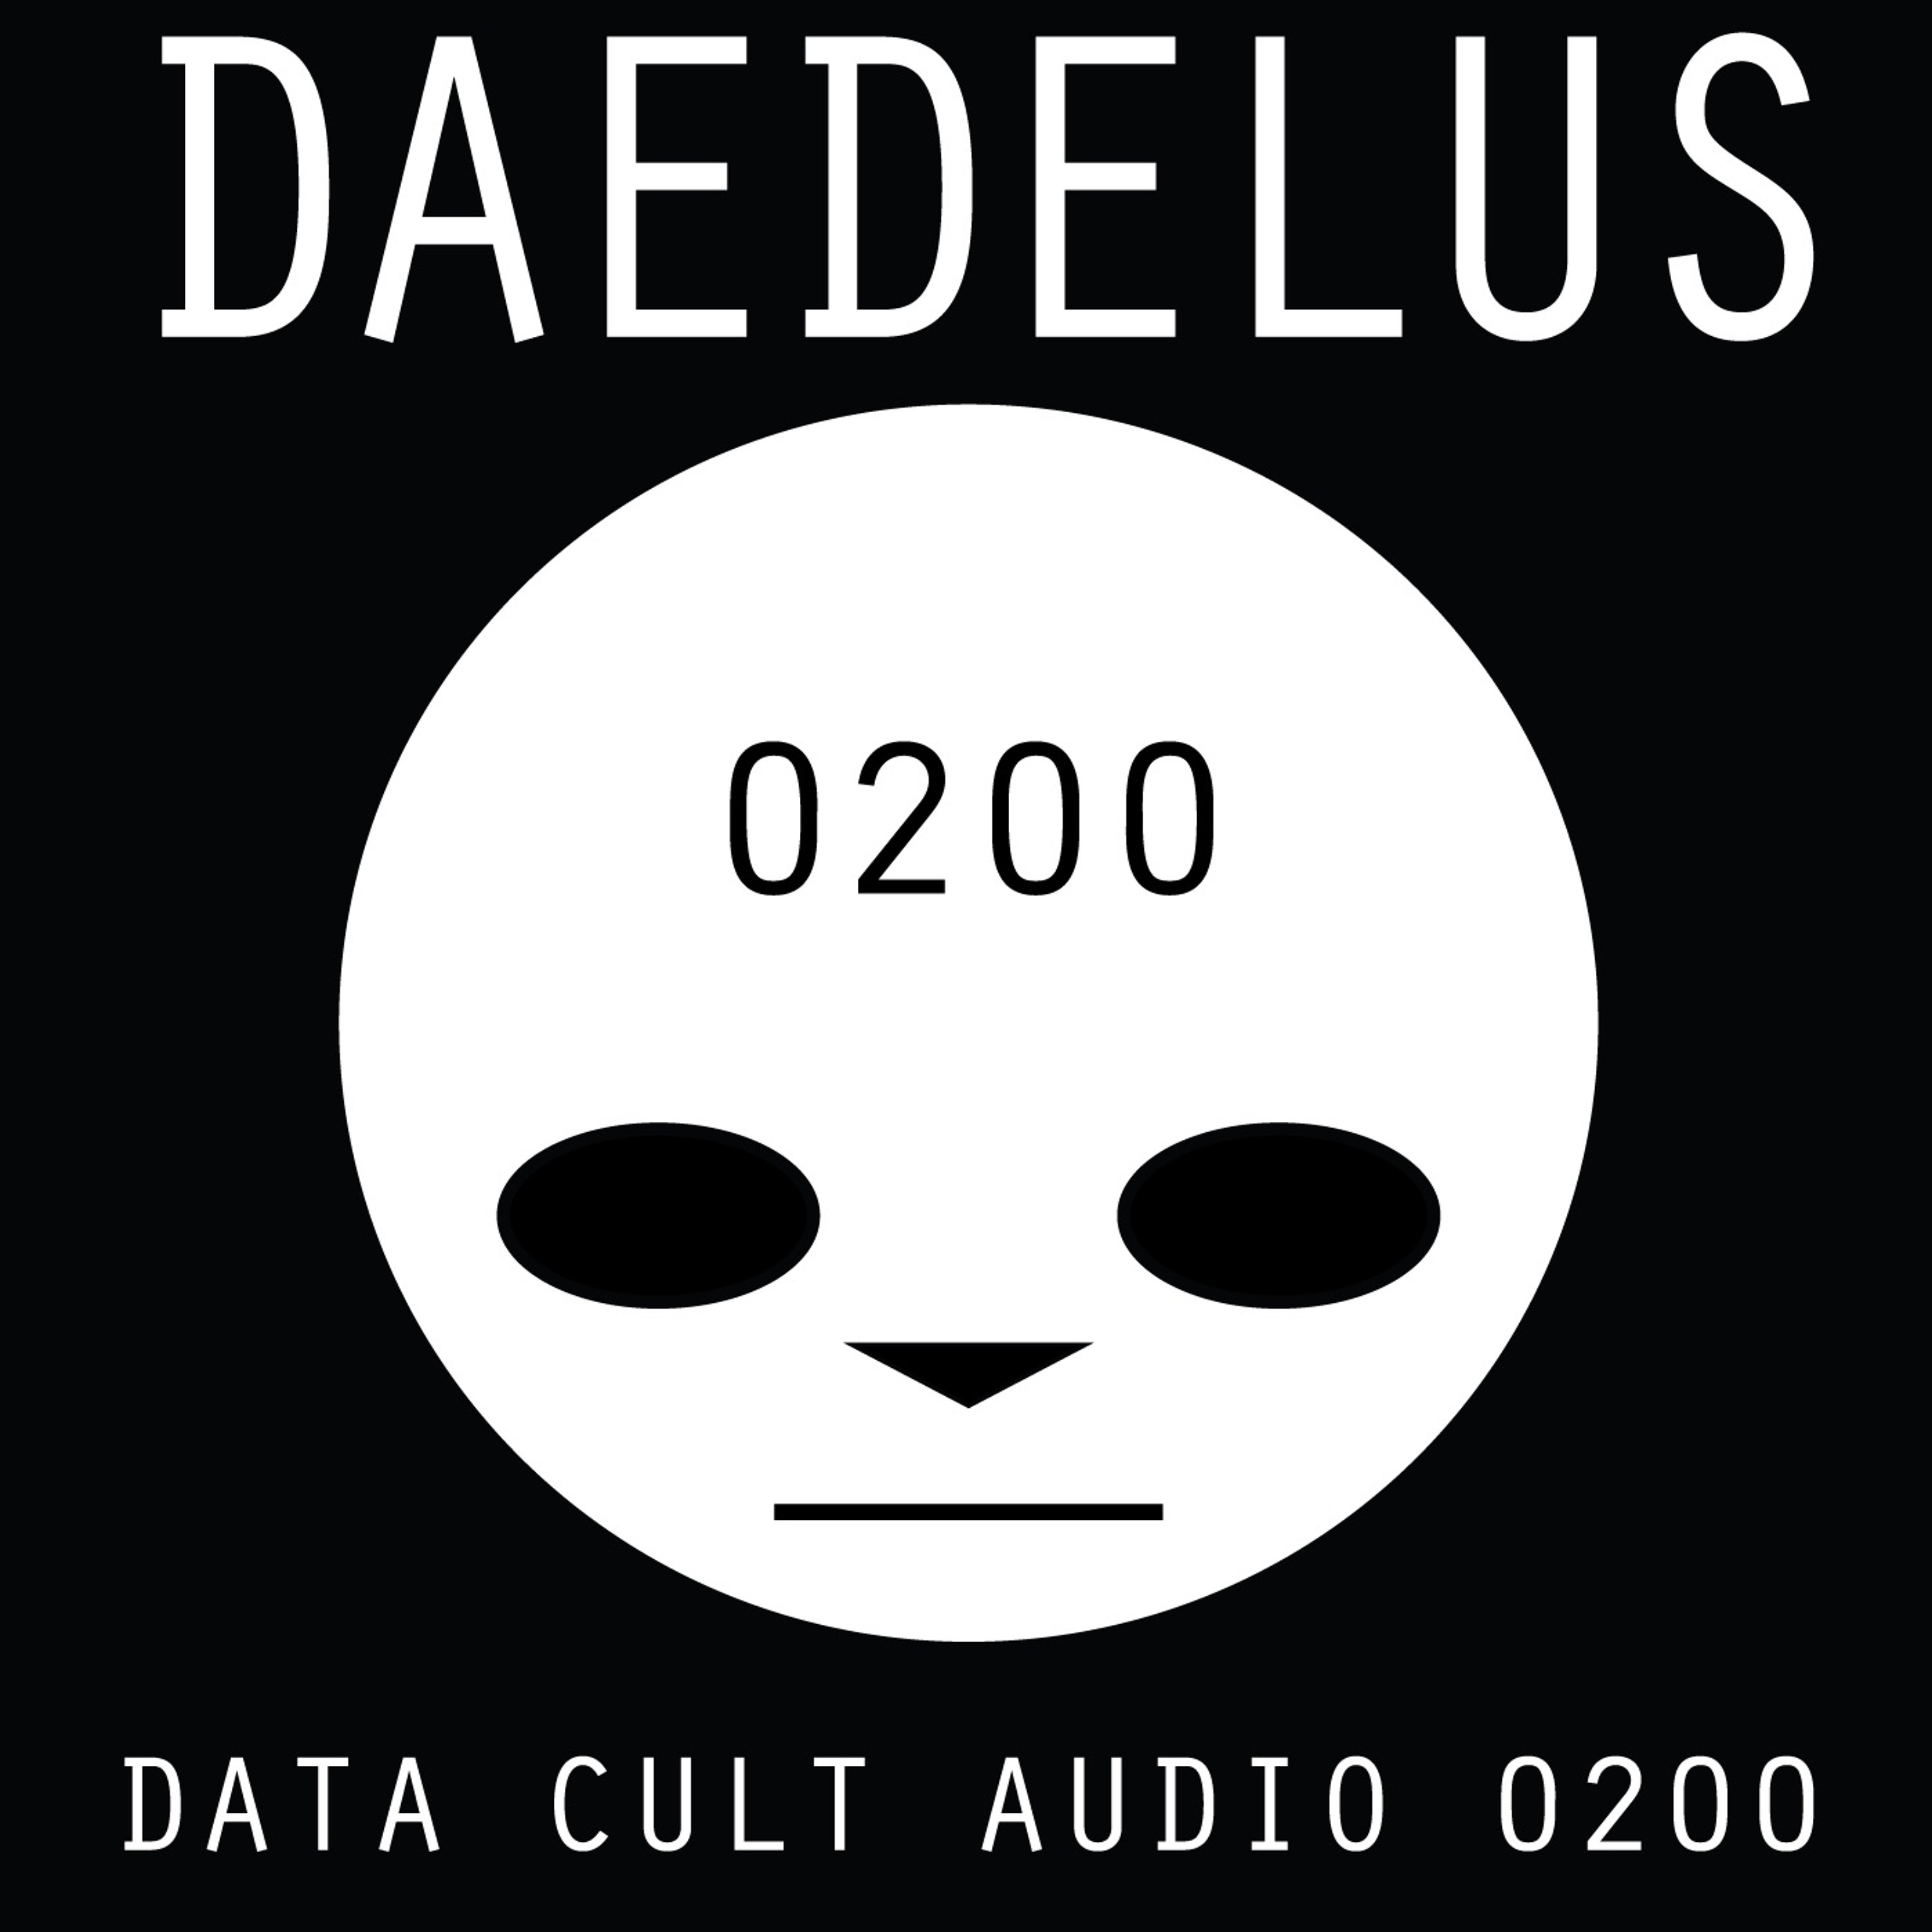 Data Cult Audio 0200 - Daedelus